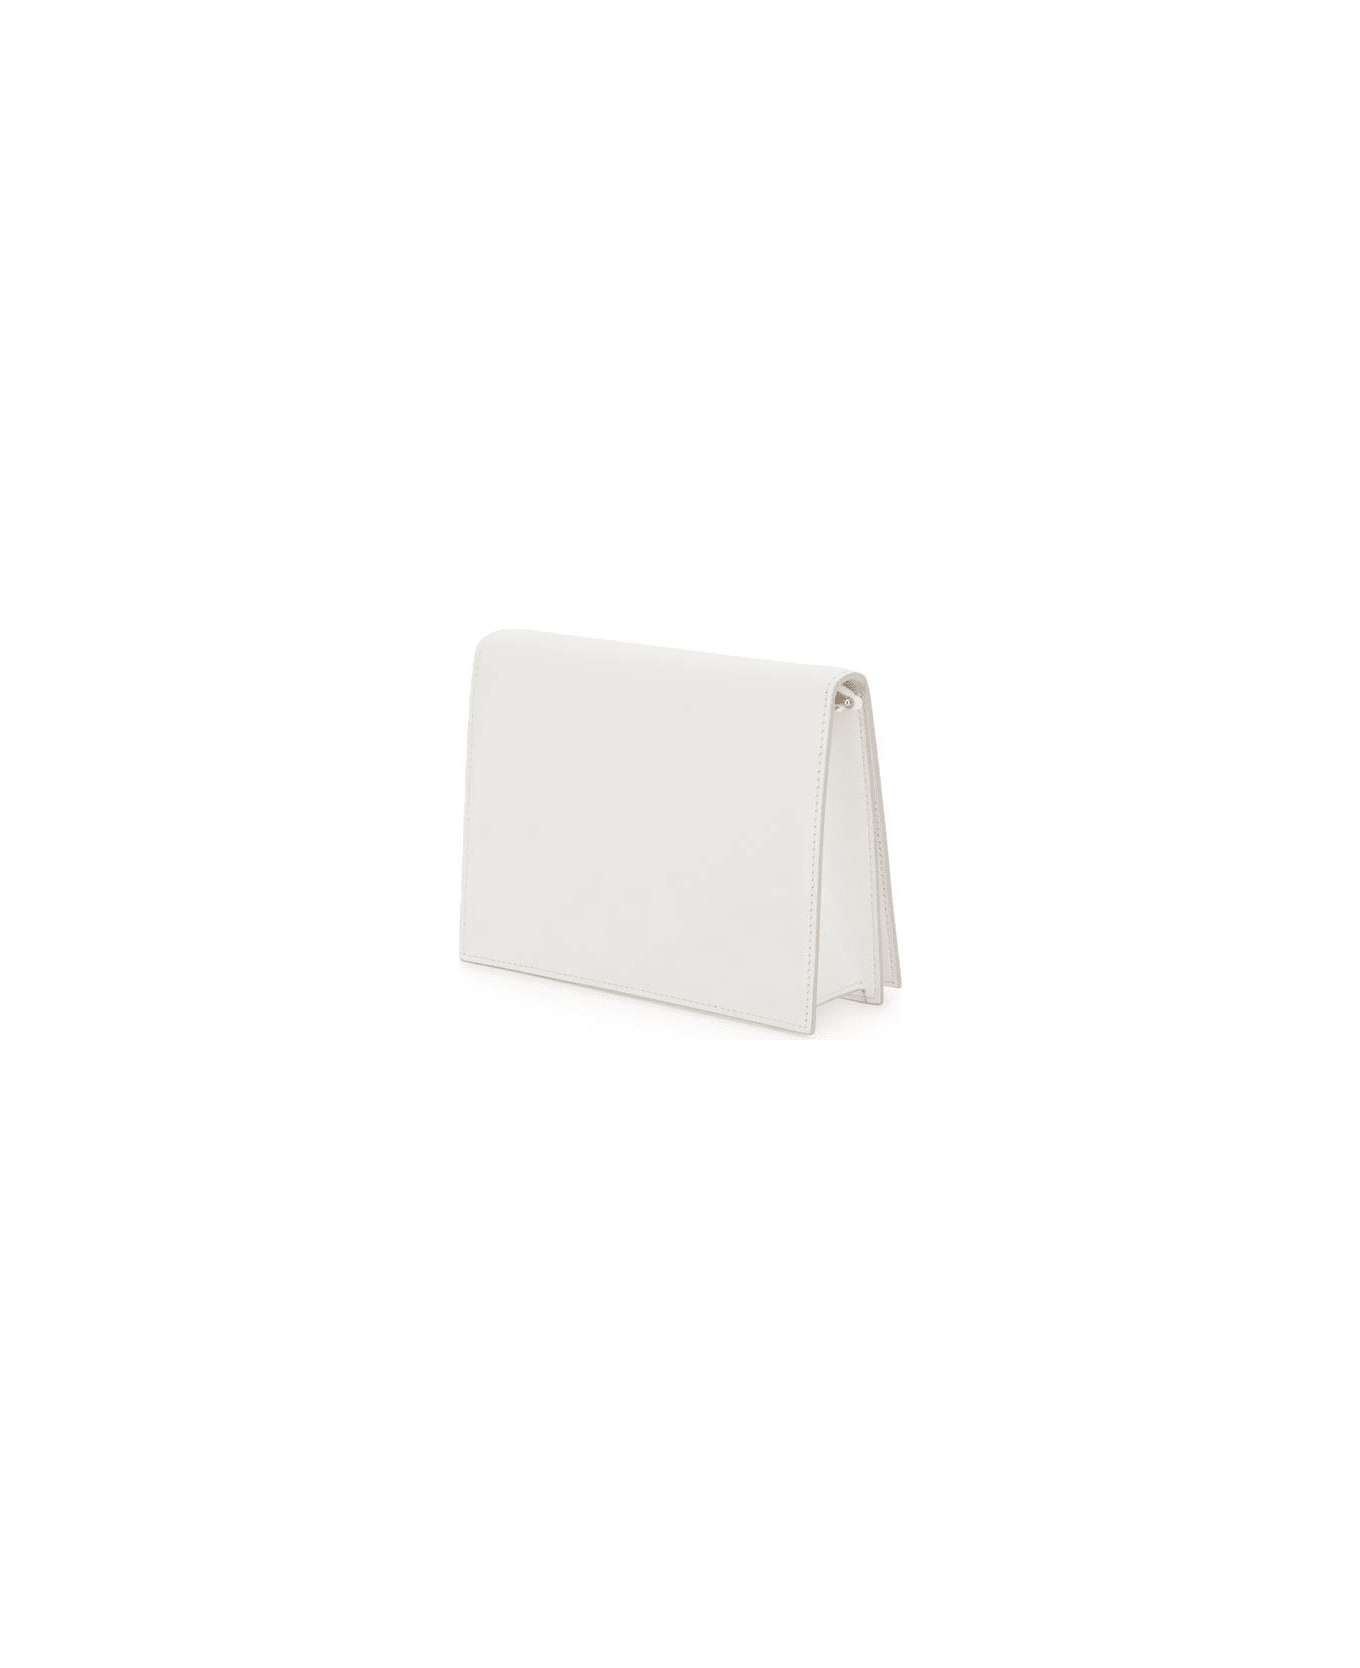 Dolce & Gabbana Dg Logo Crossbody Bag - WHITE